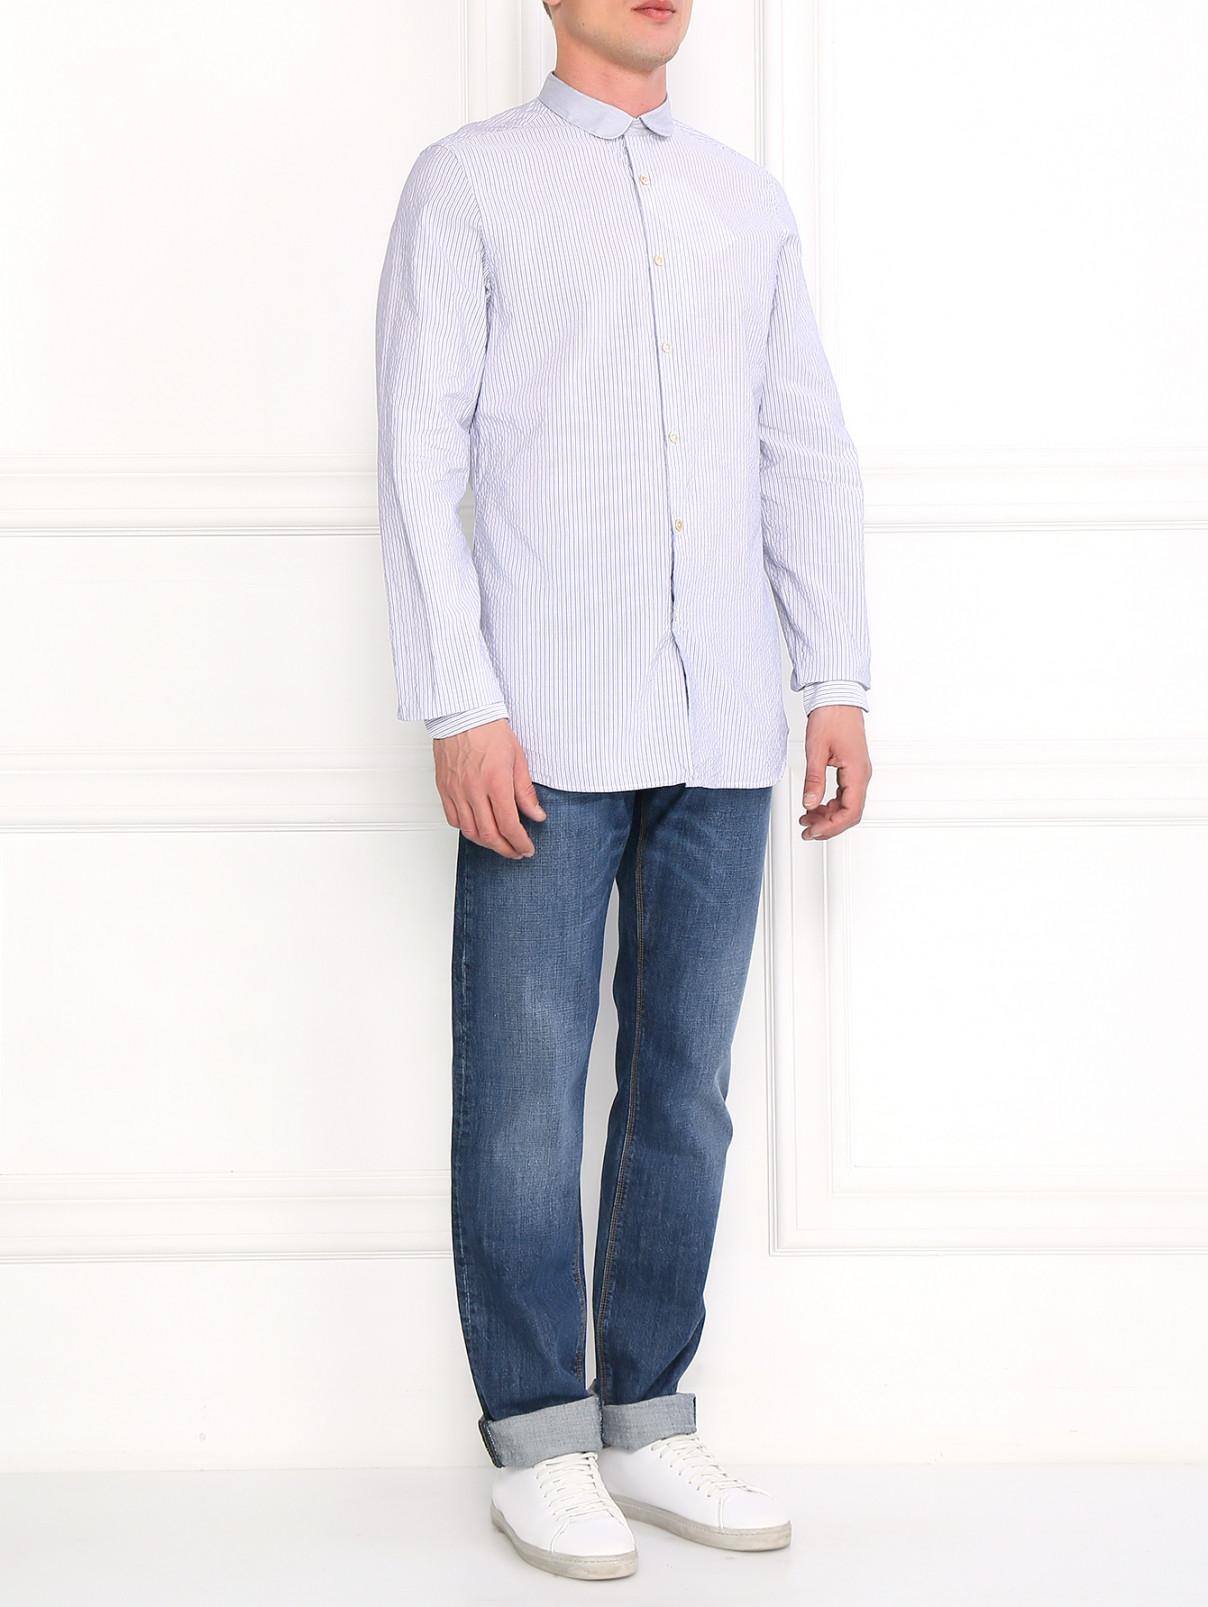 Рубашка из хлопка с узором "полоска" Paul Smith  –  Модель Общий вид  – Цвет:  Узор